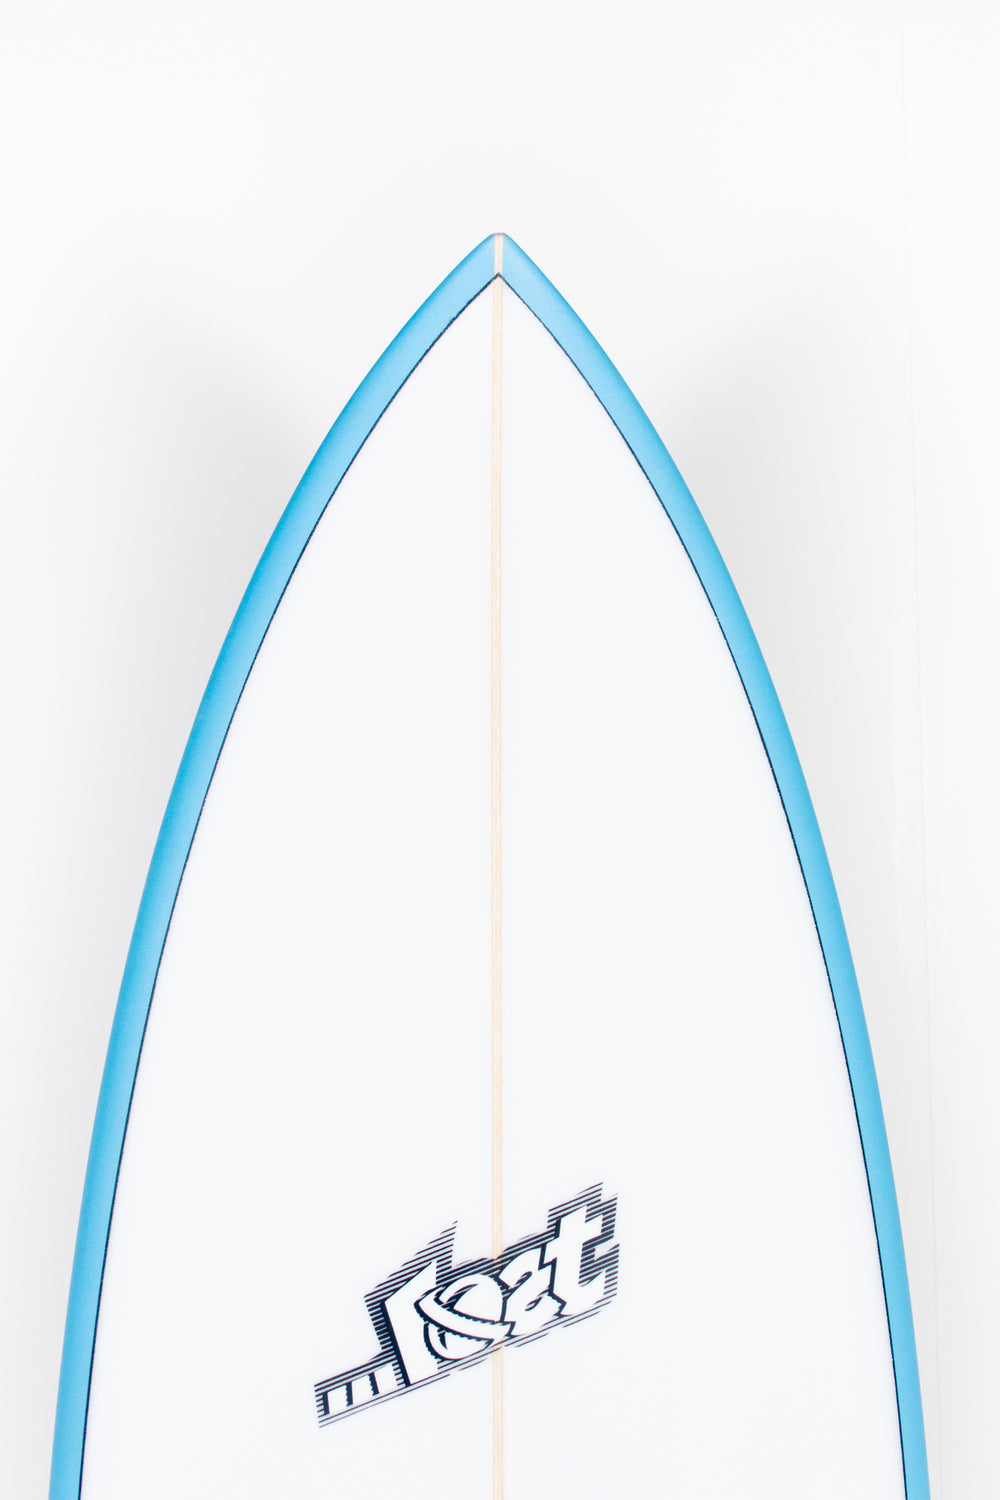 Lost Surfboard - ROCKET REDUX by Matt Biolos - 5'9” x 19,75 x 2,45